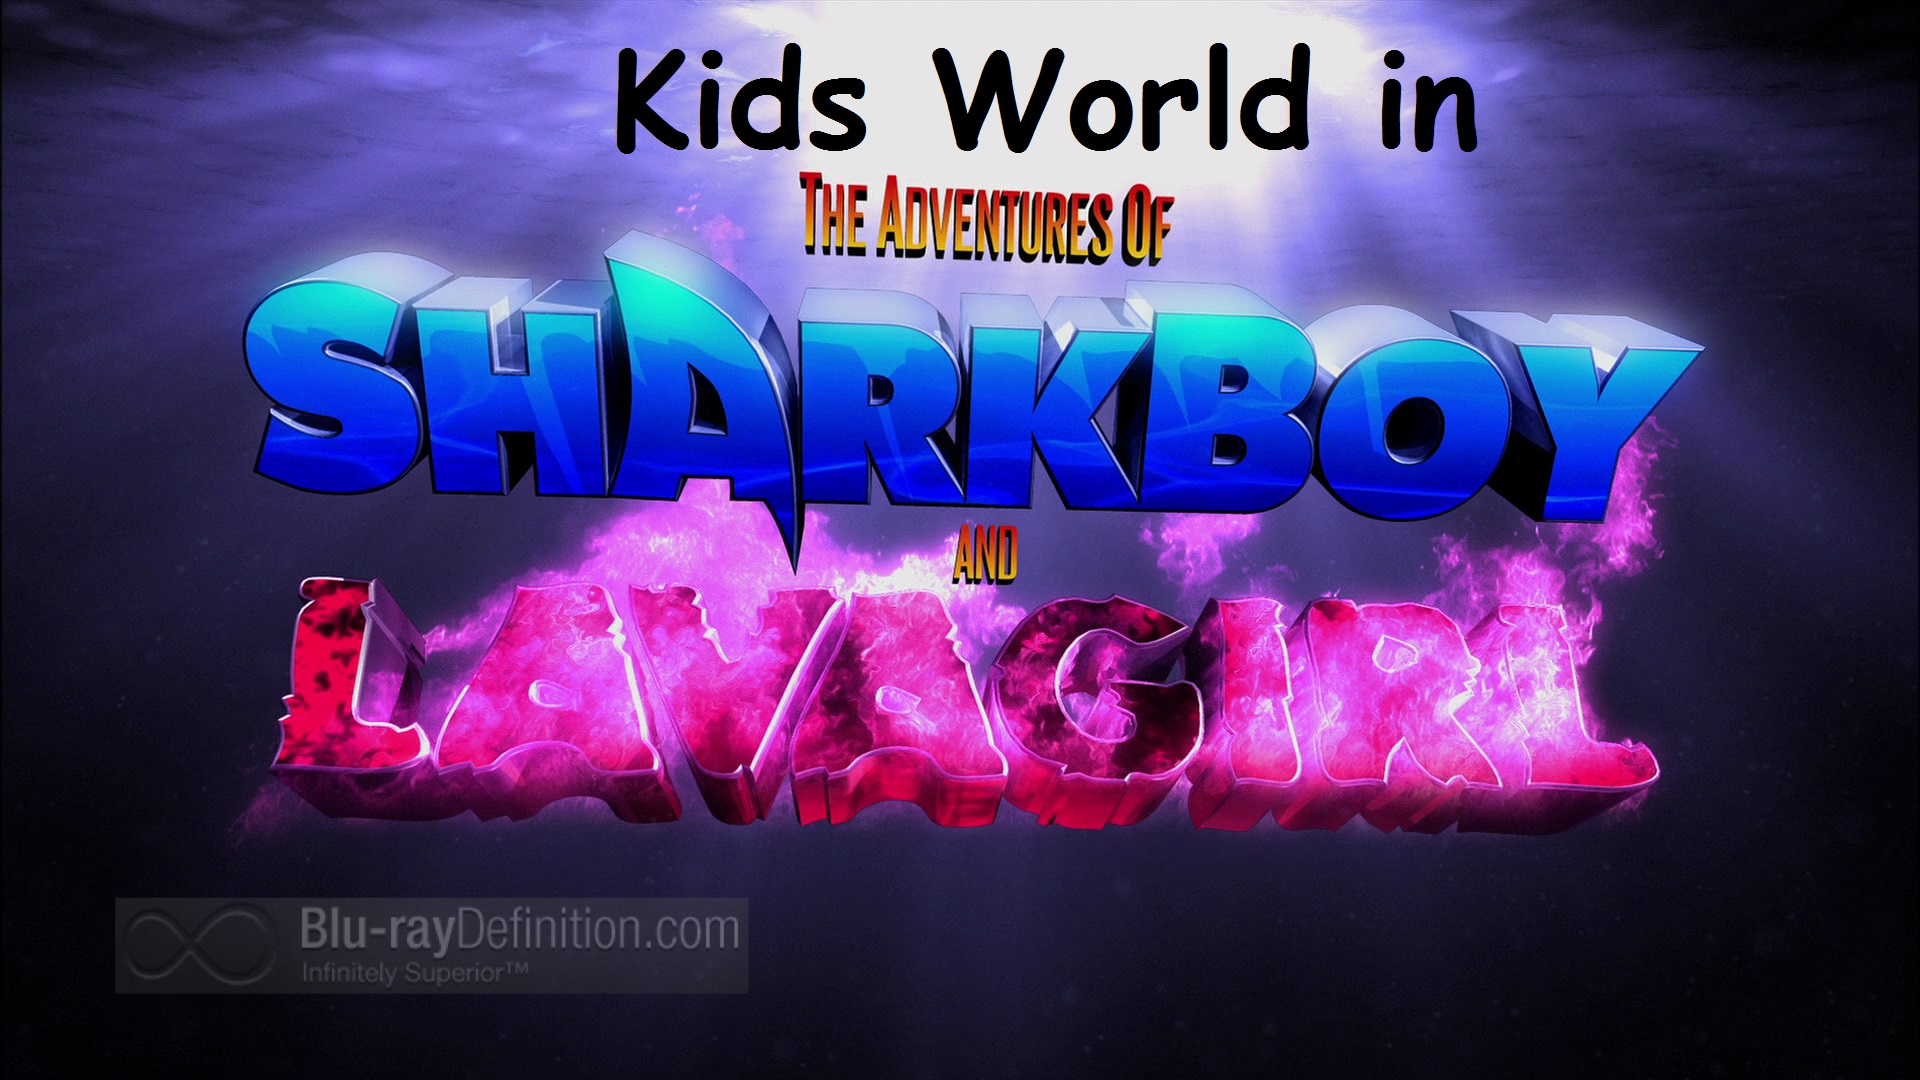 Fandom Wiki The Kids World in | & Sharkboy of World\'s Kids | Adventures Lavagirl Adventures